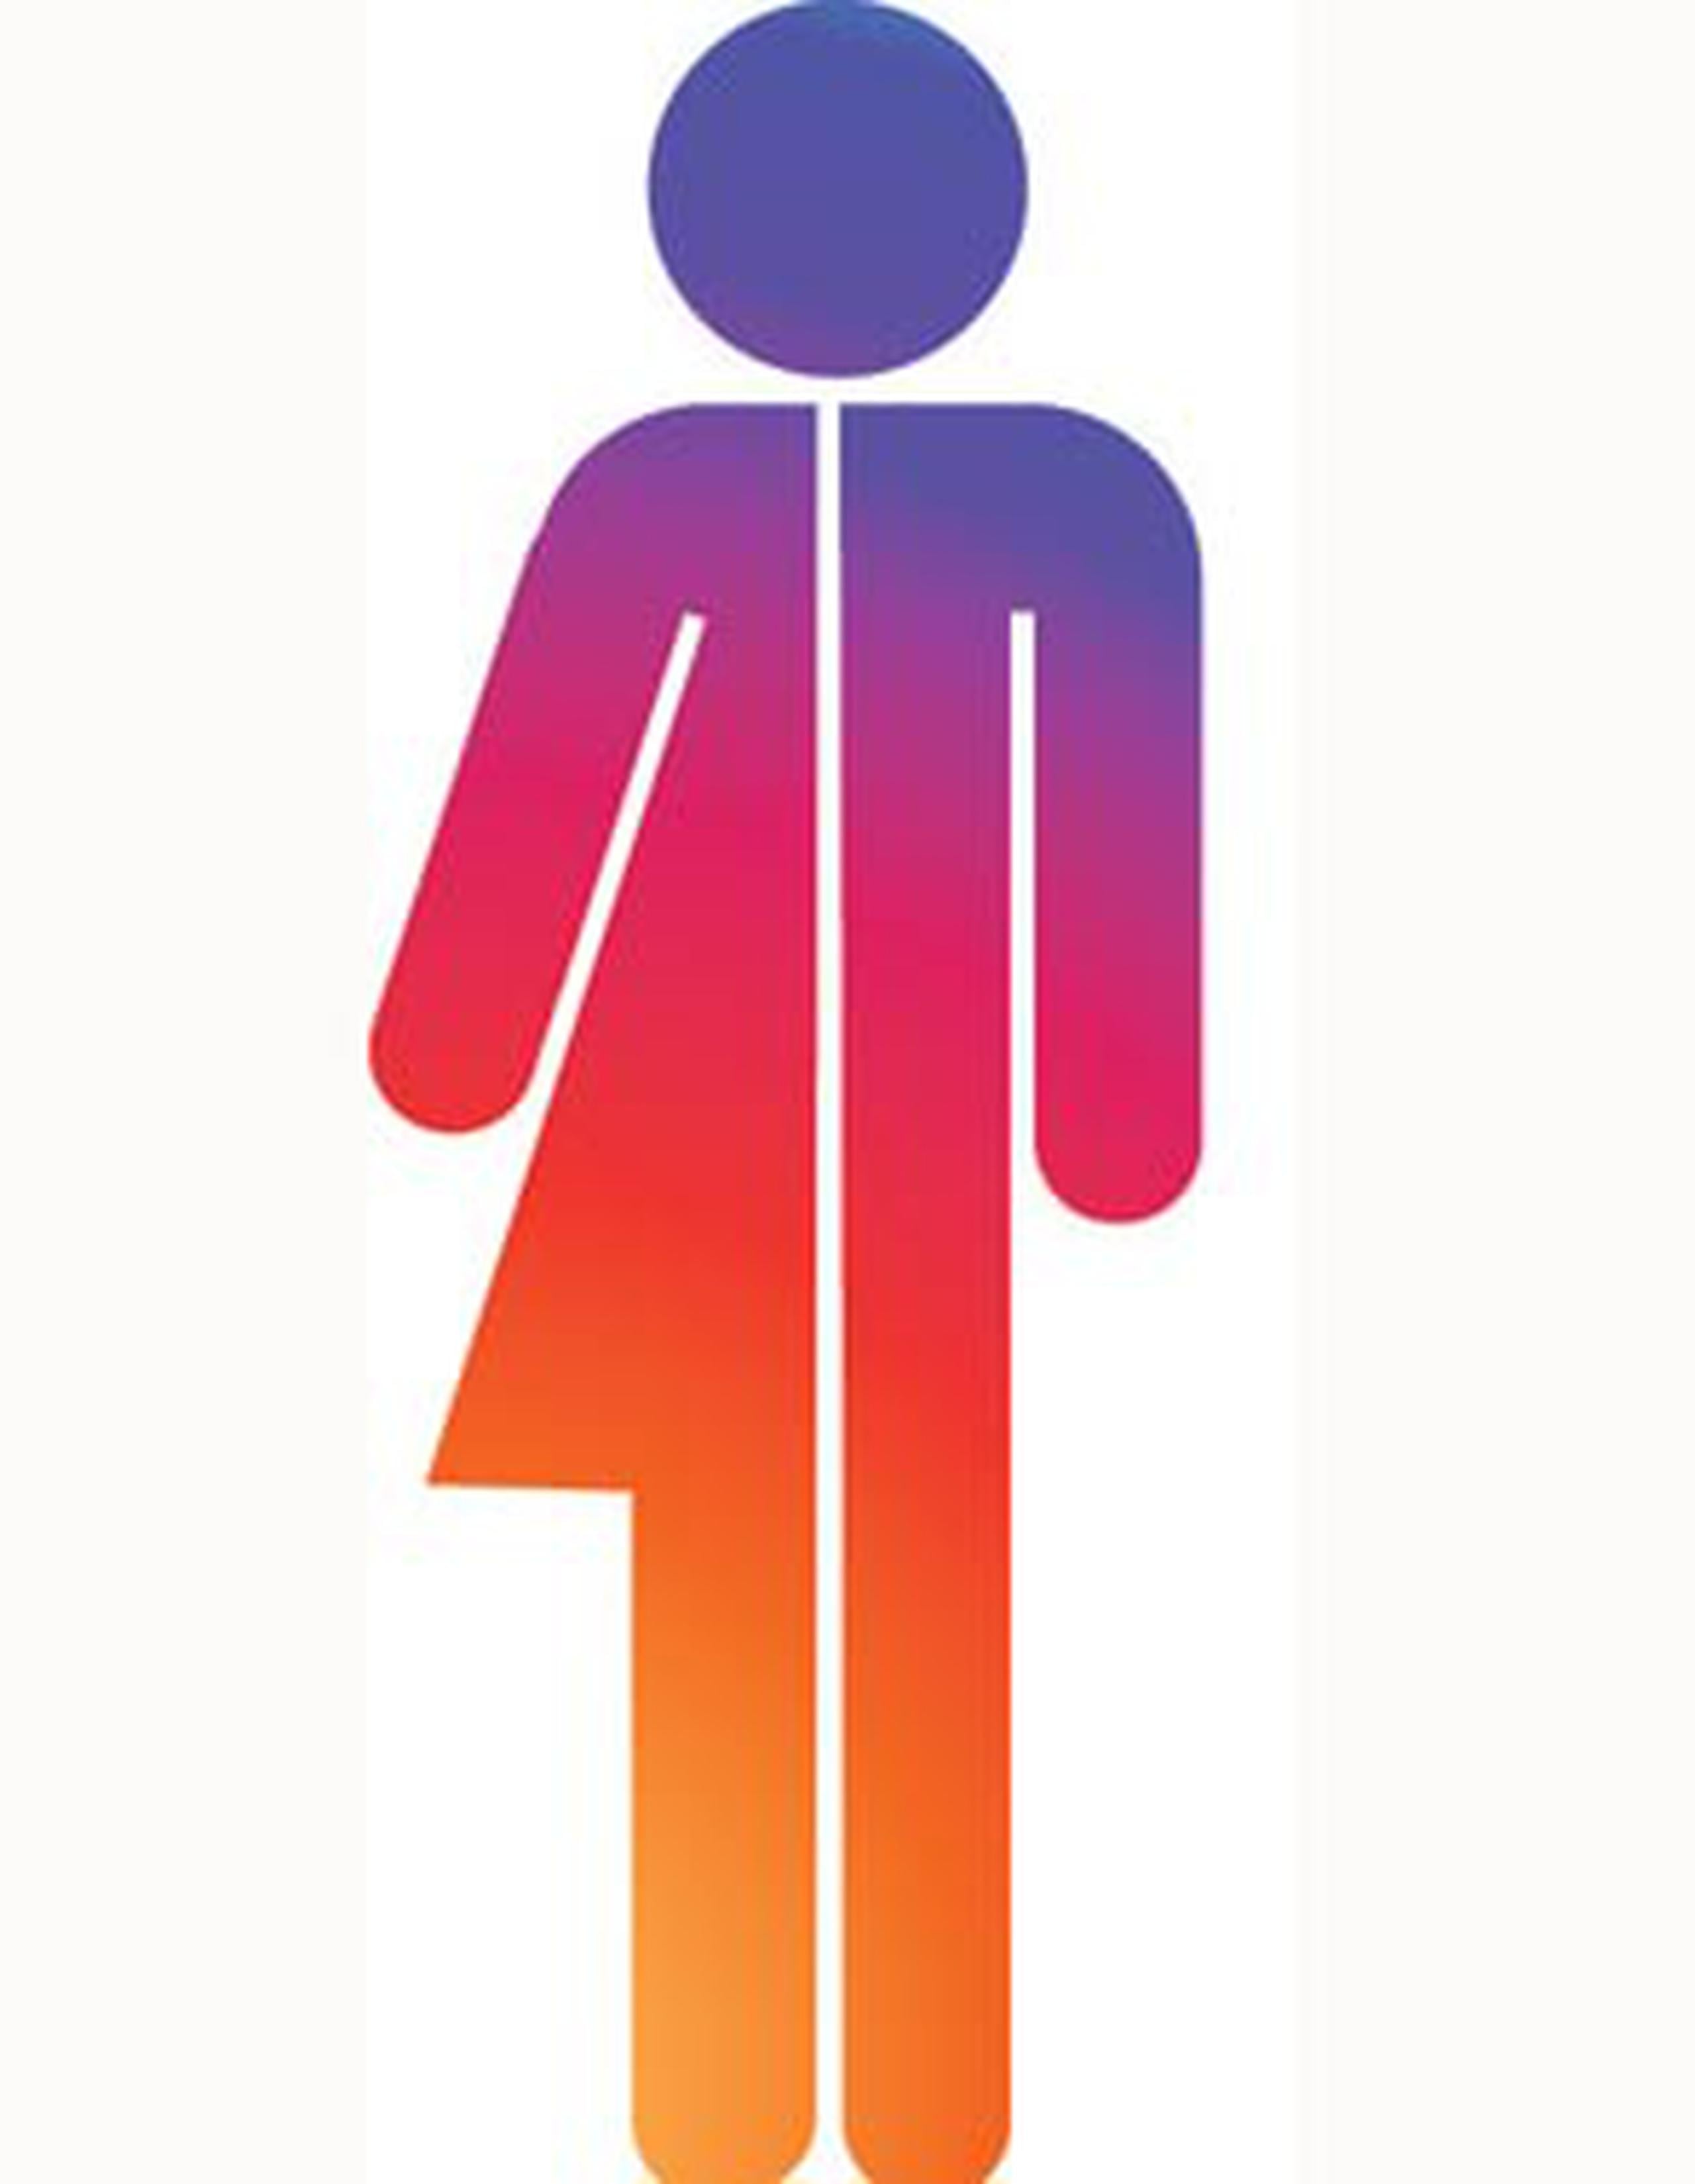 Algunos países y jurisdicciones han dado pasos de reconocimiento a los intersexuales.